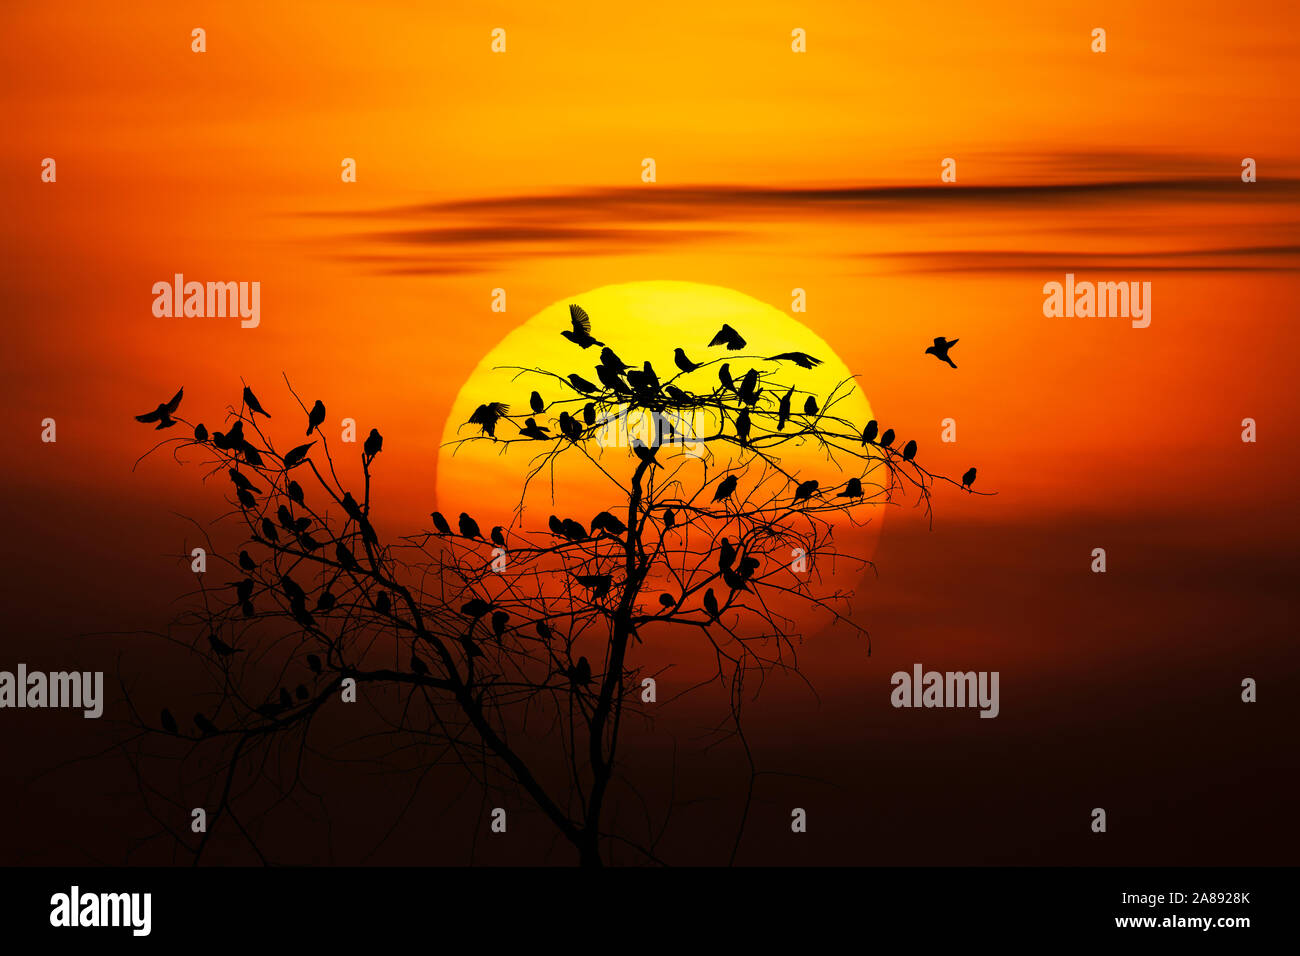 Bellissima alba immagini e fotografie stock ad alta risoluzione - Alamy